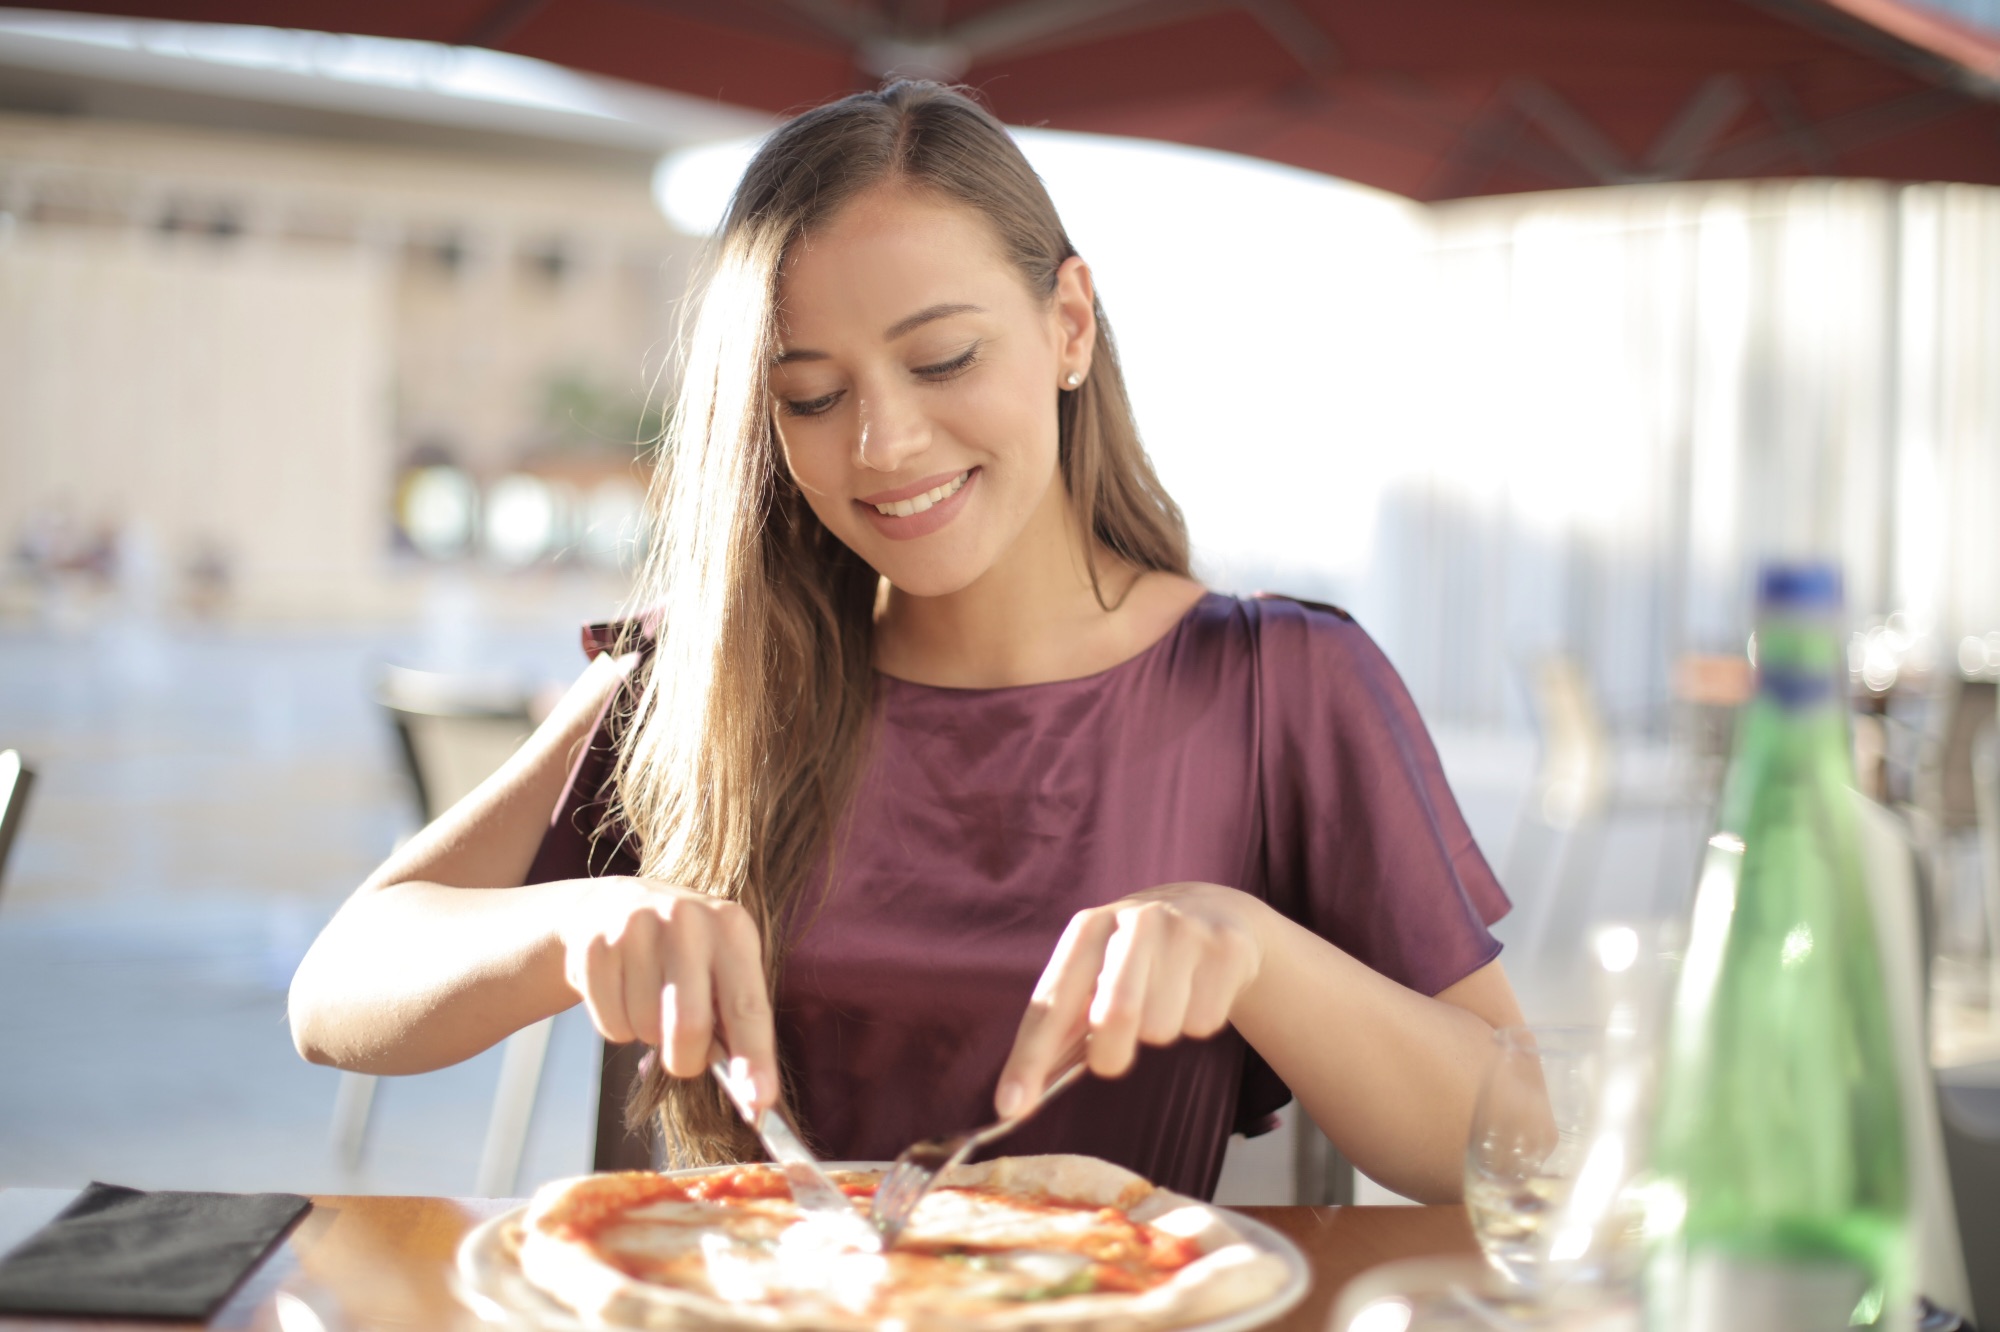 Dieta ma wpływ - na zdjęciu osoba jedząca pizzę